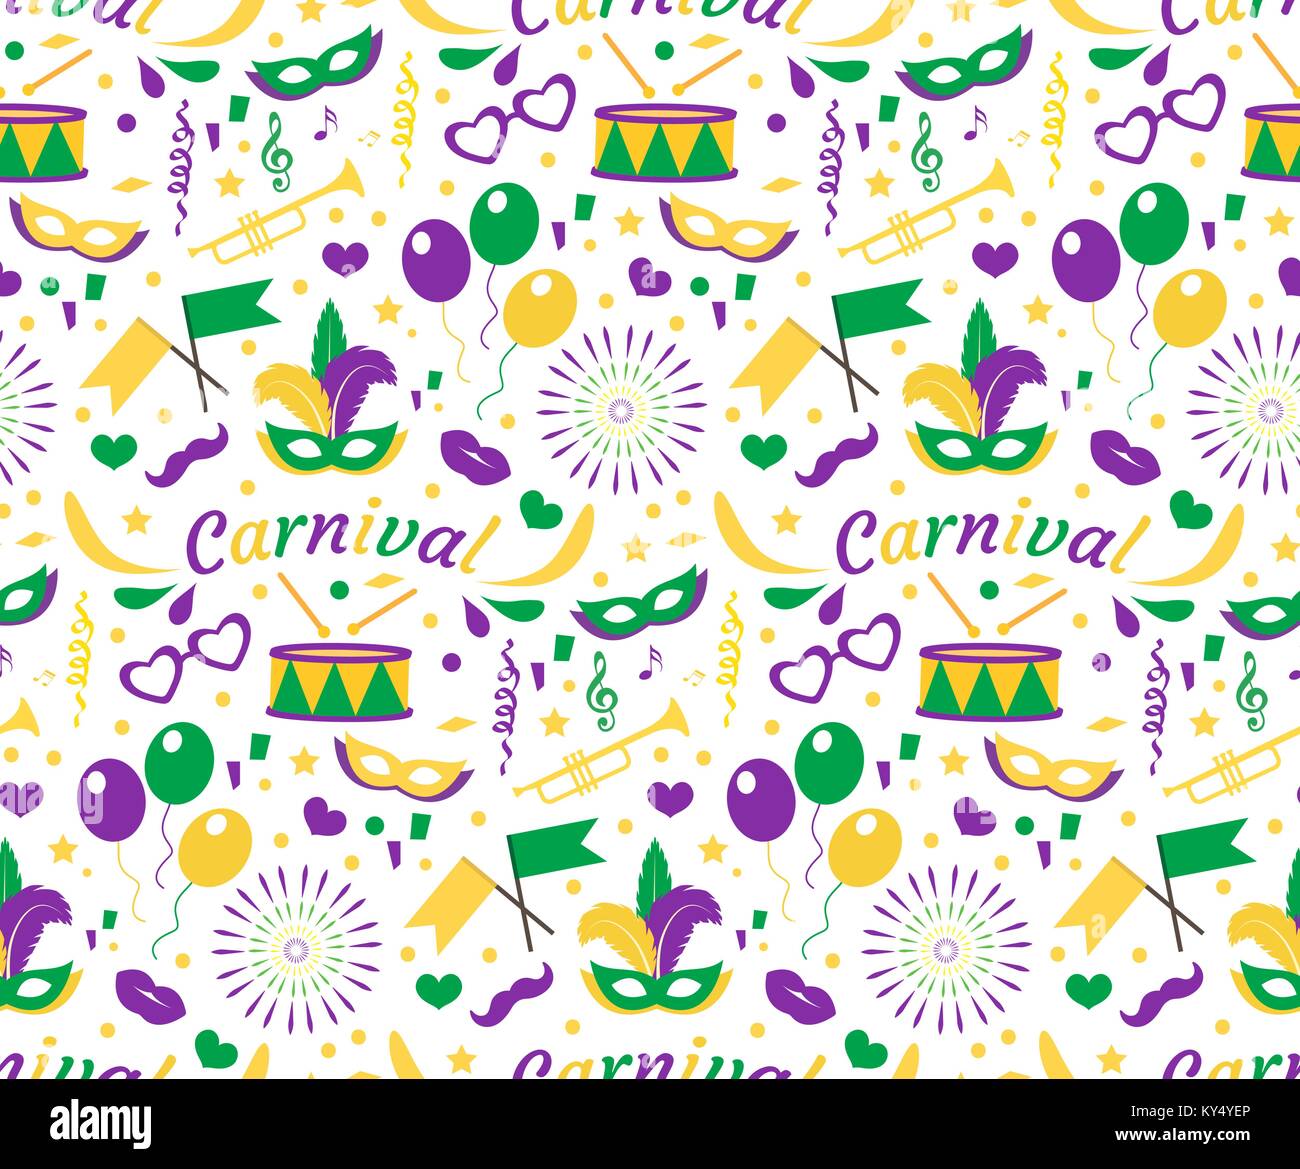 Carnaval Mardi Gras modèle transparent avec masque des plumes, des perles. Mardi Gras, texture de fond sans fin, papier peint. Toile de Festival violet, vert, jaune. Vector illustration. Illustration de Vecteur